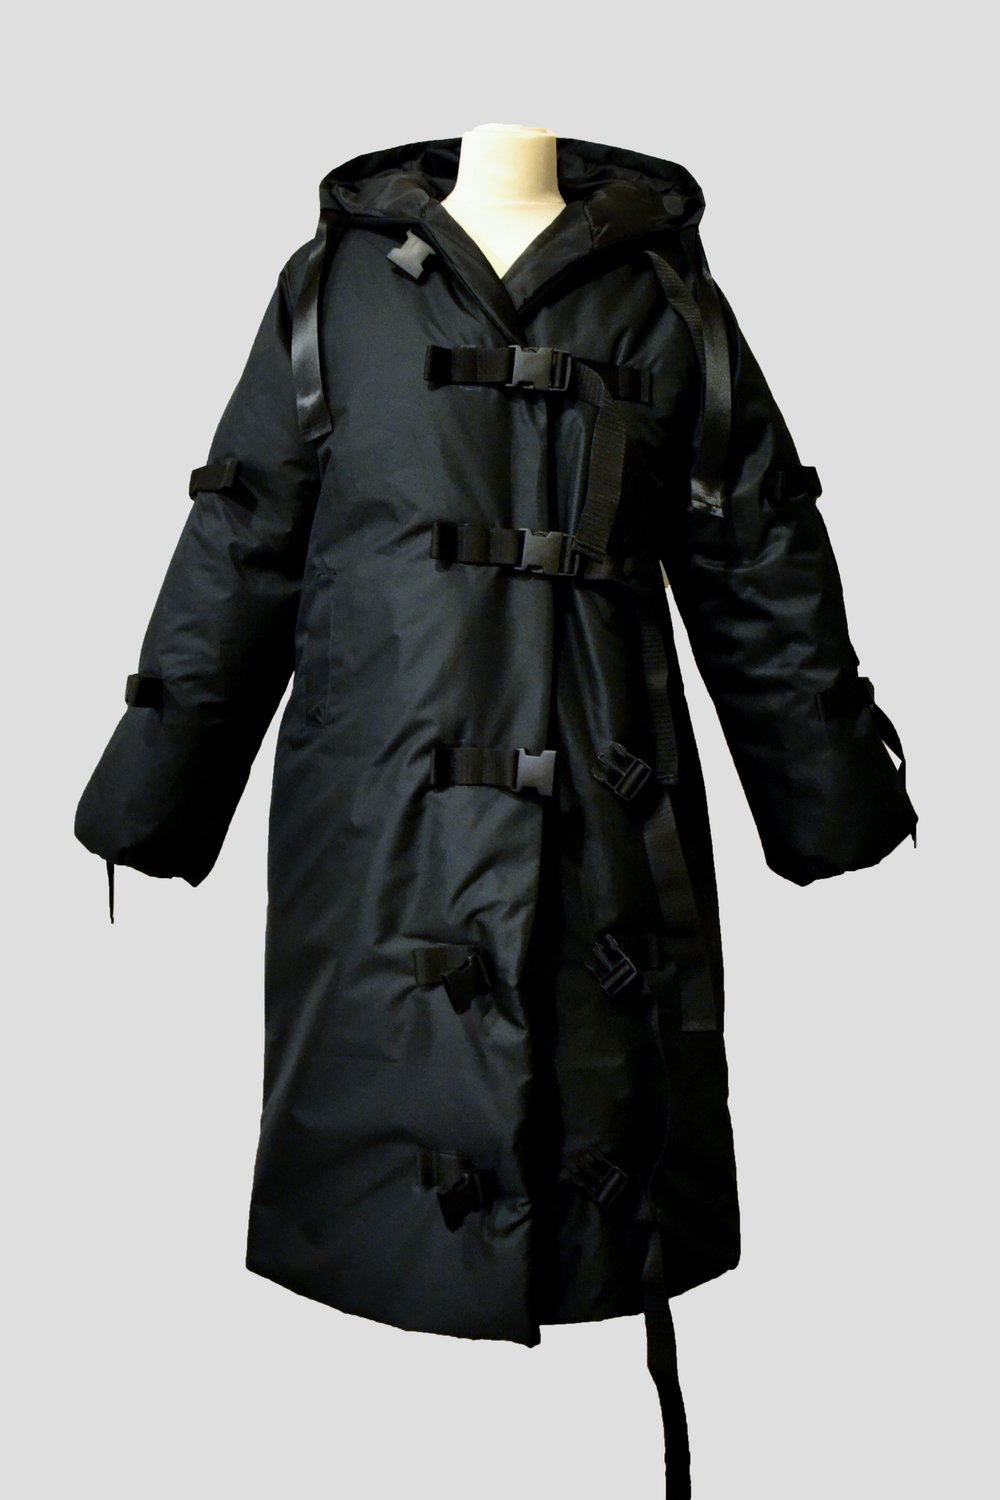 Image of Black Long Jacket